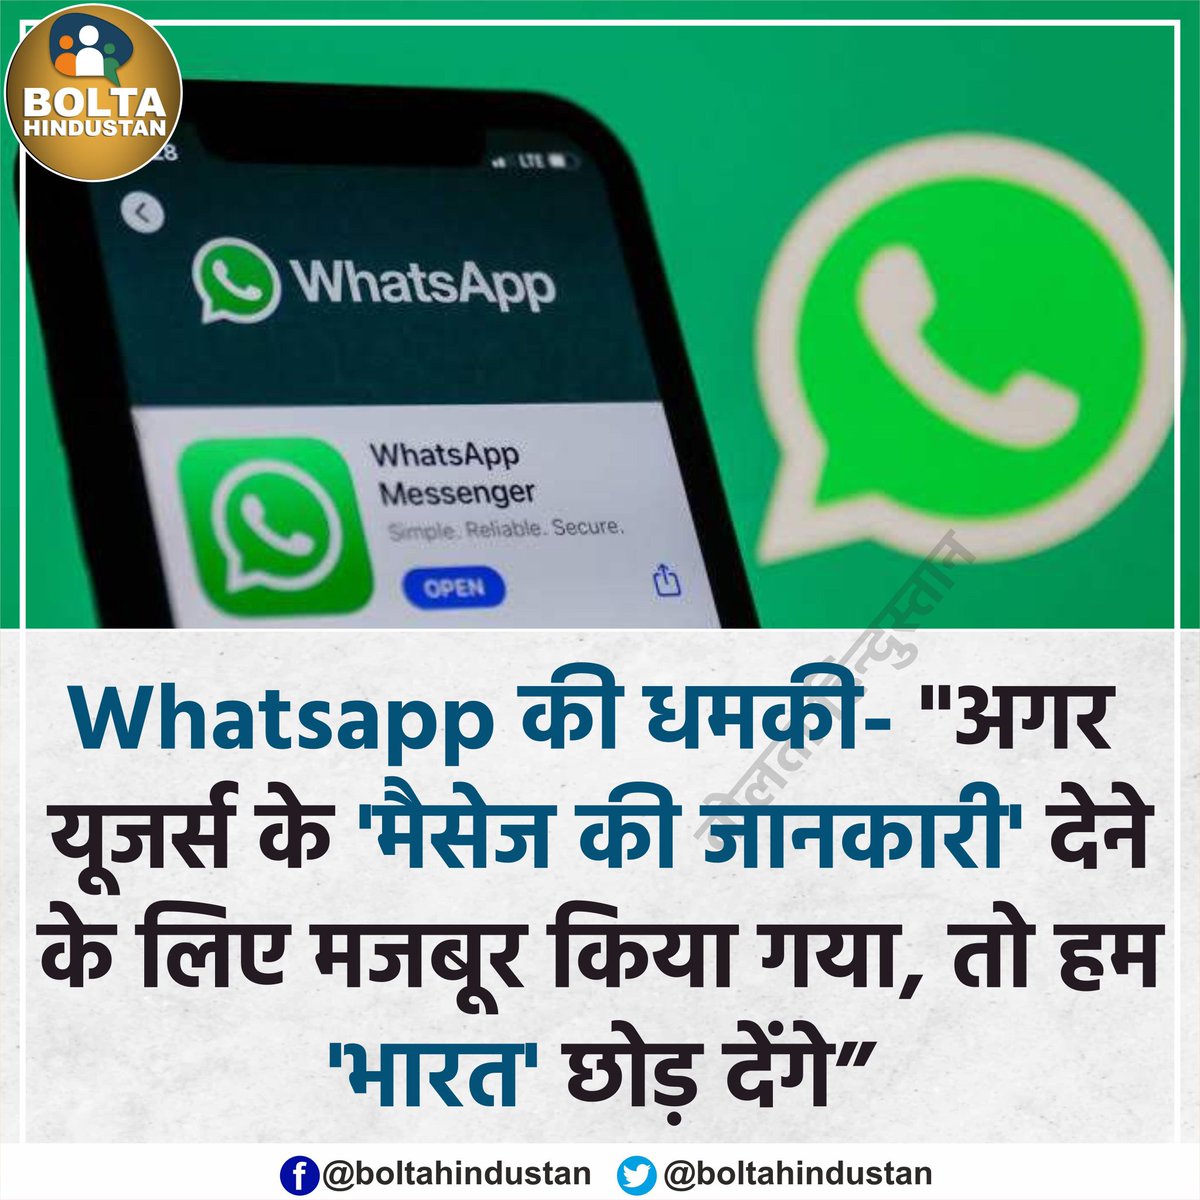 मोदी सरकार से नाराज़ हुआ Whatsapp ? दिल्ली हाईकोर्ट में कहा- ' अगर ज्यादा उंगली करोगे तो हम भारत छोड़ देंगे' 😳😳